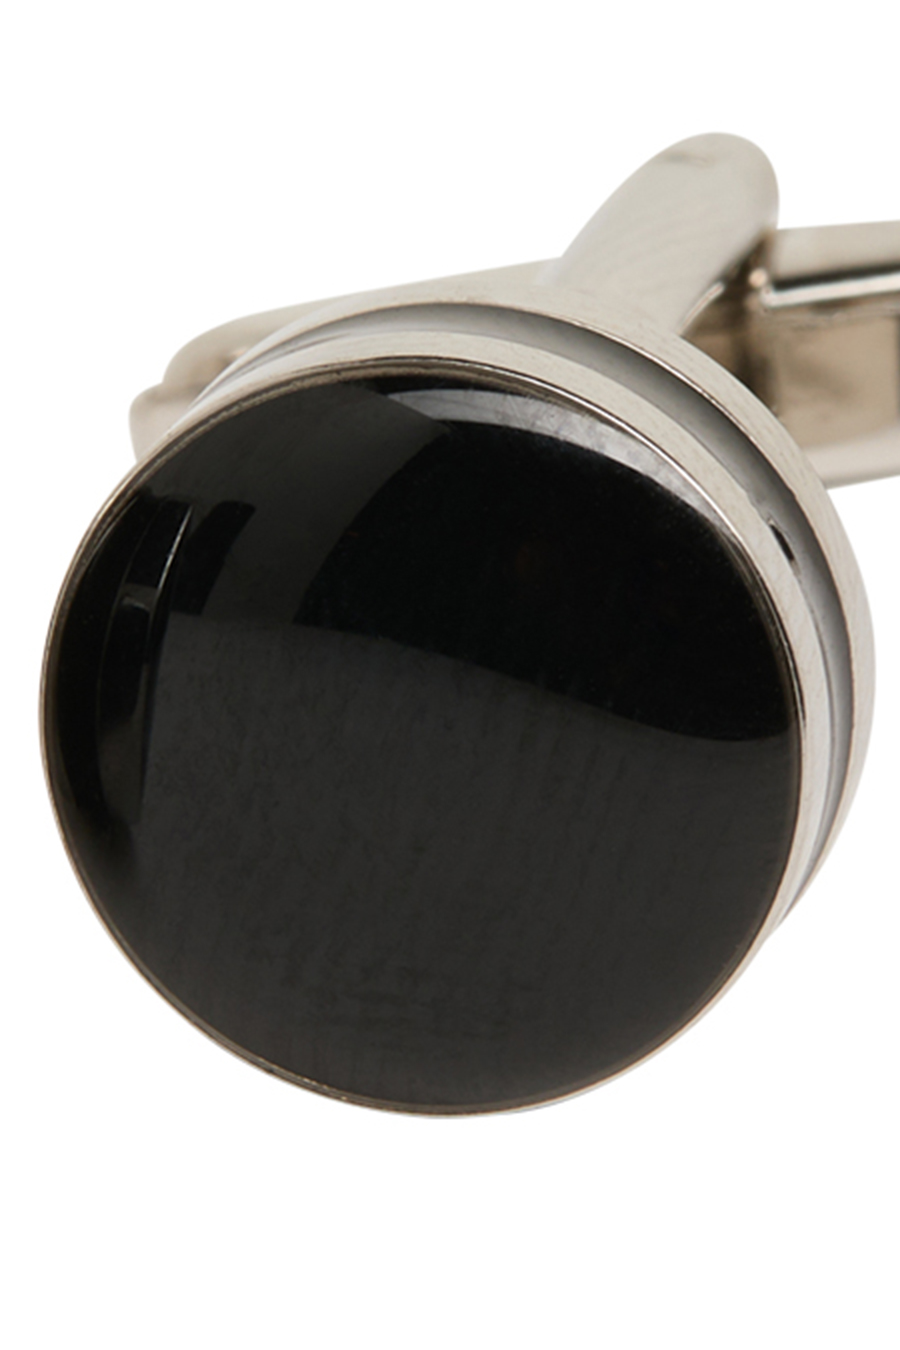 silber/schwarz Optik ETERNA runde Manschettenknopf